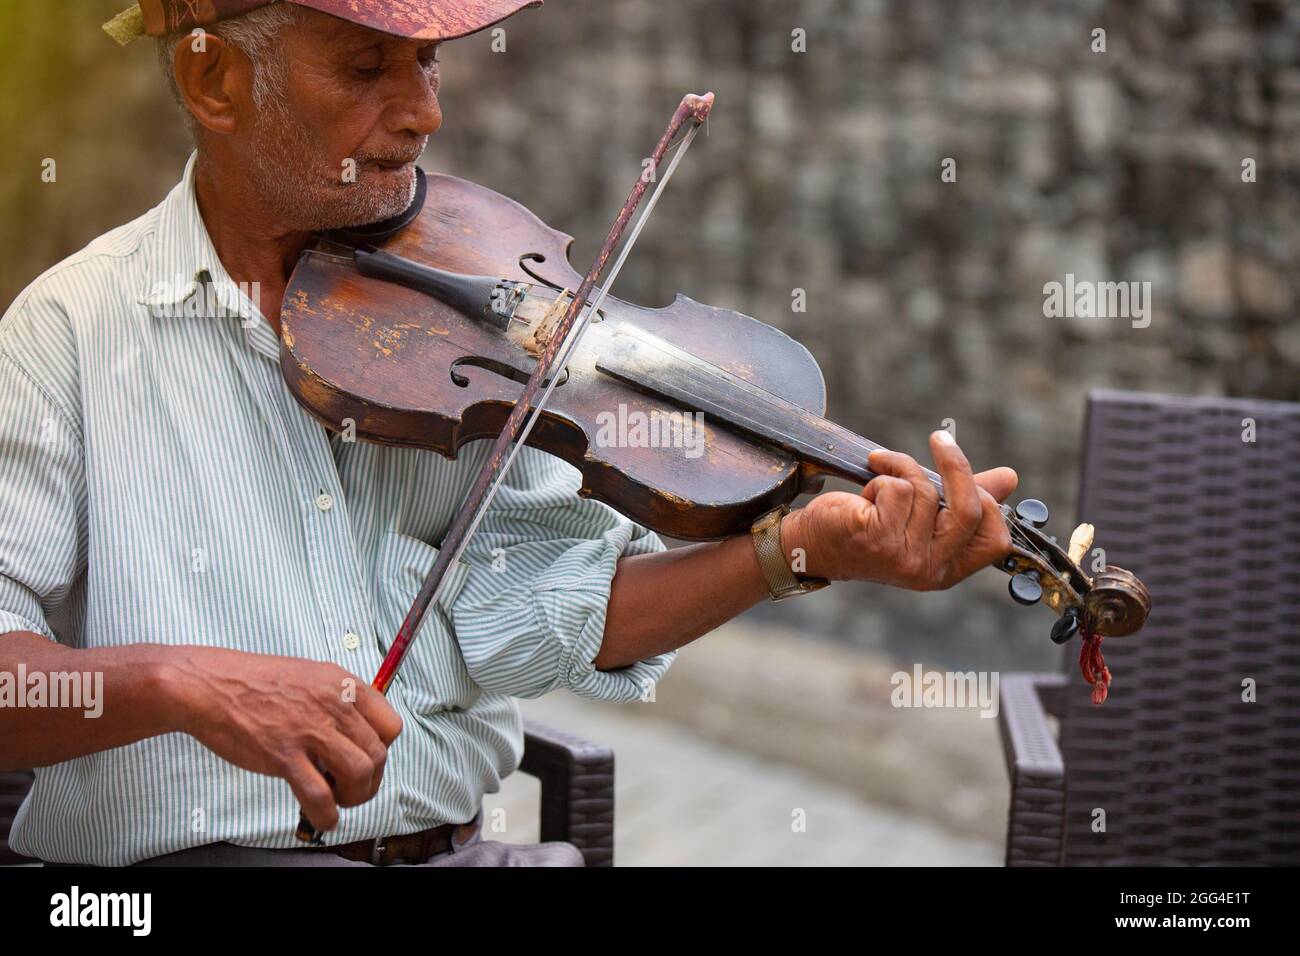 Street Old Musician assis sur une chaise avec une casquette sur sa tête portant un t-shirt rayé, jouant du violon pour tous ceux qui passent par lui et l'écoutent Banque D'Images